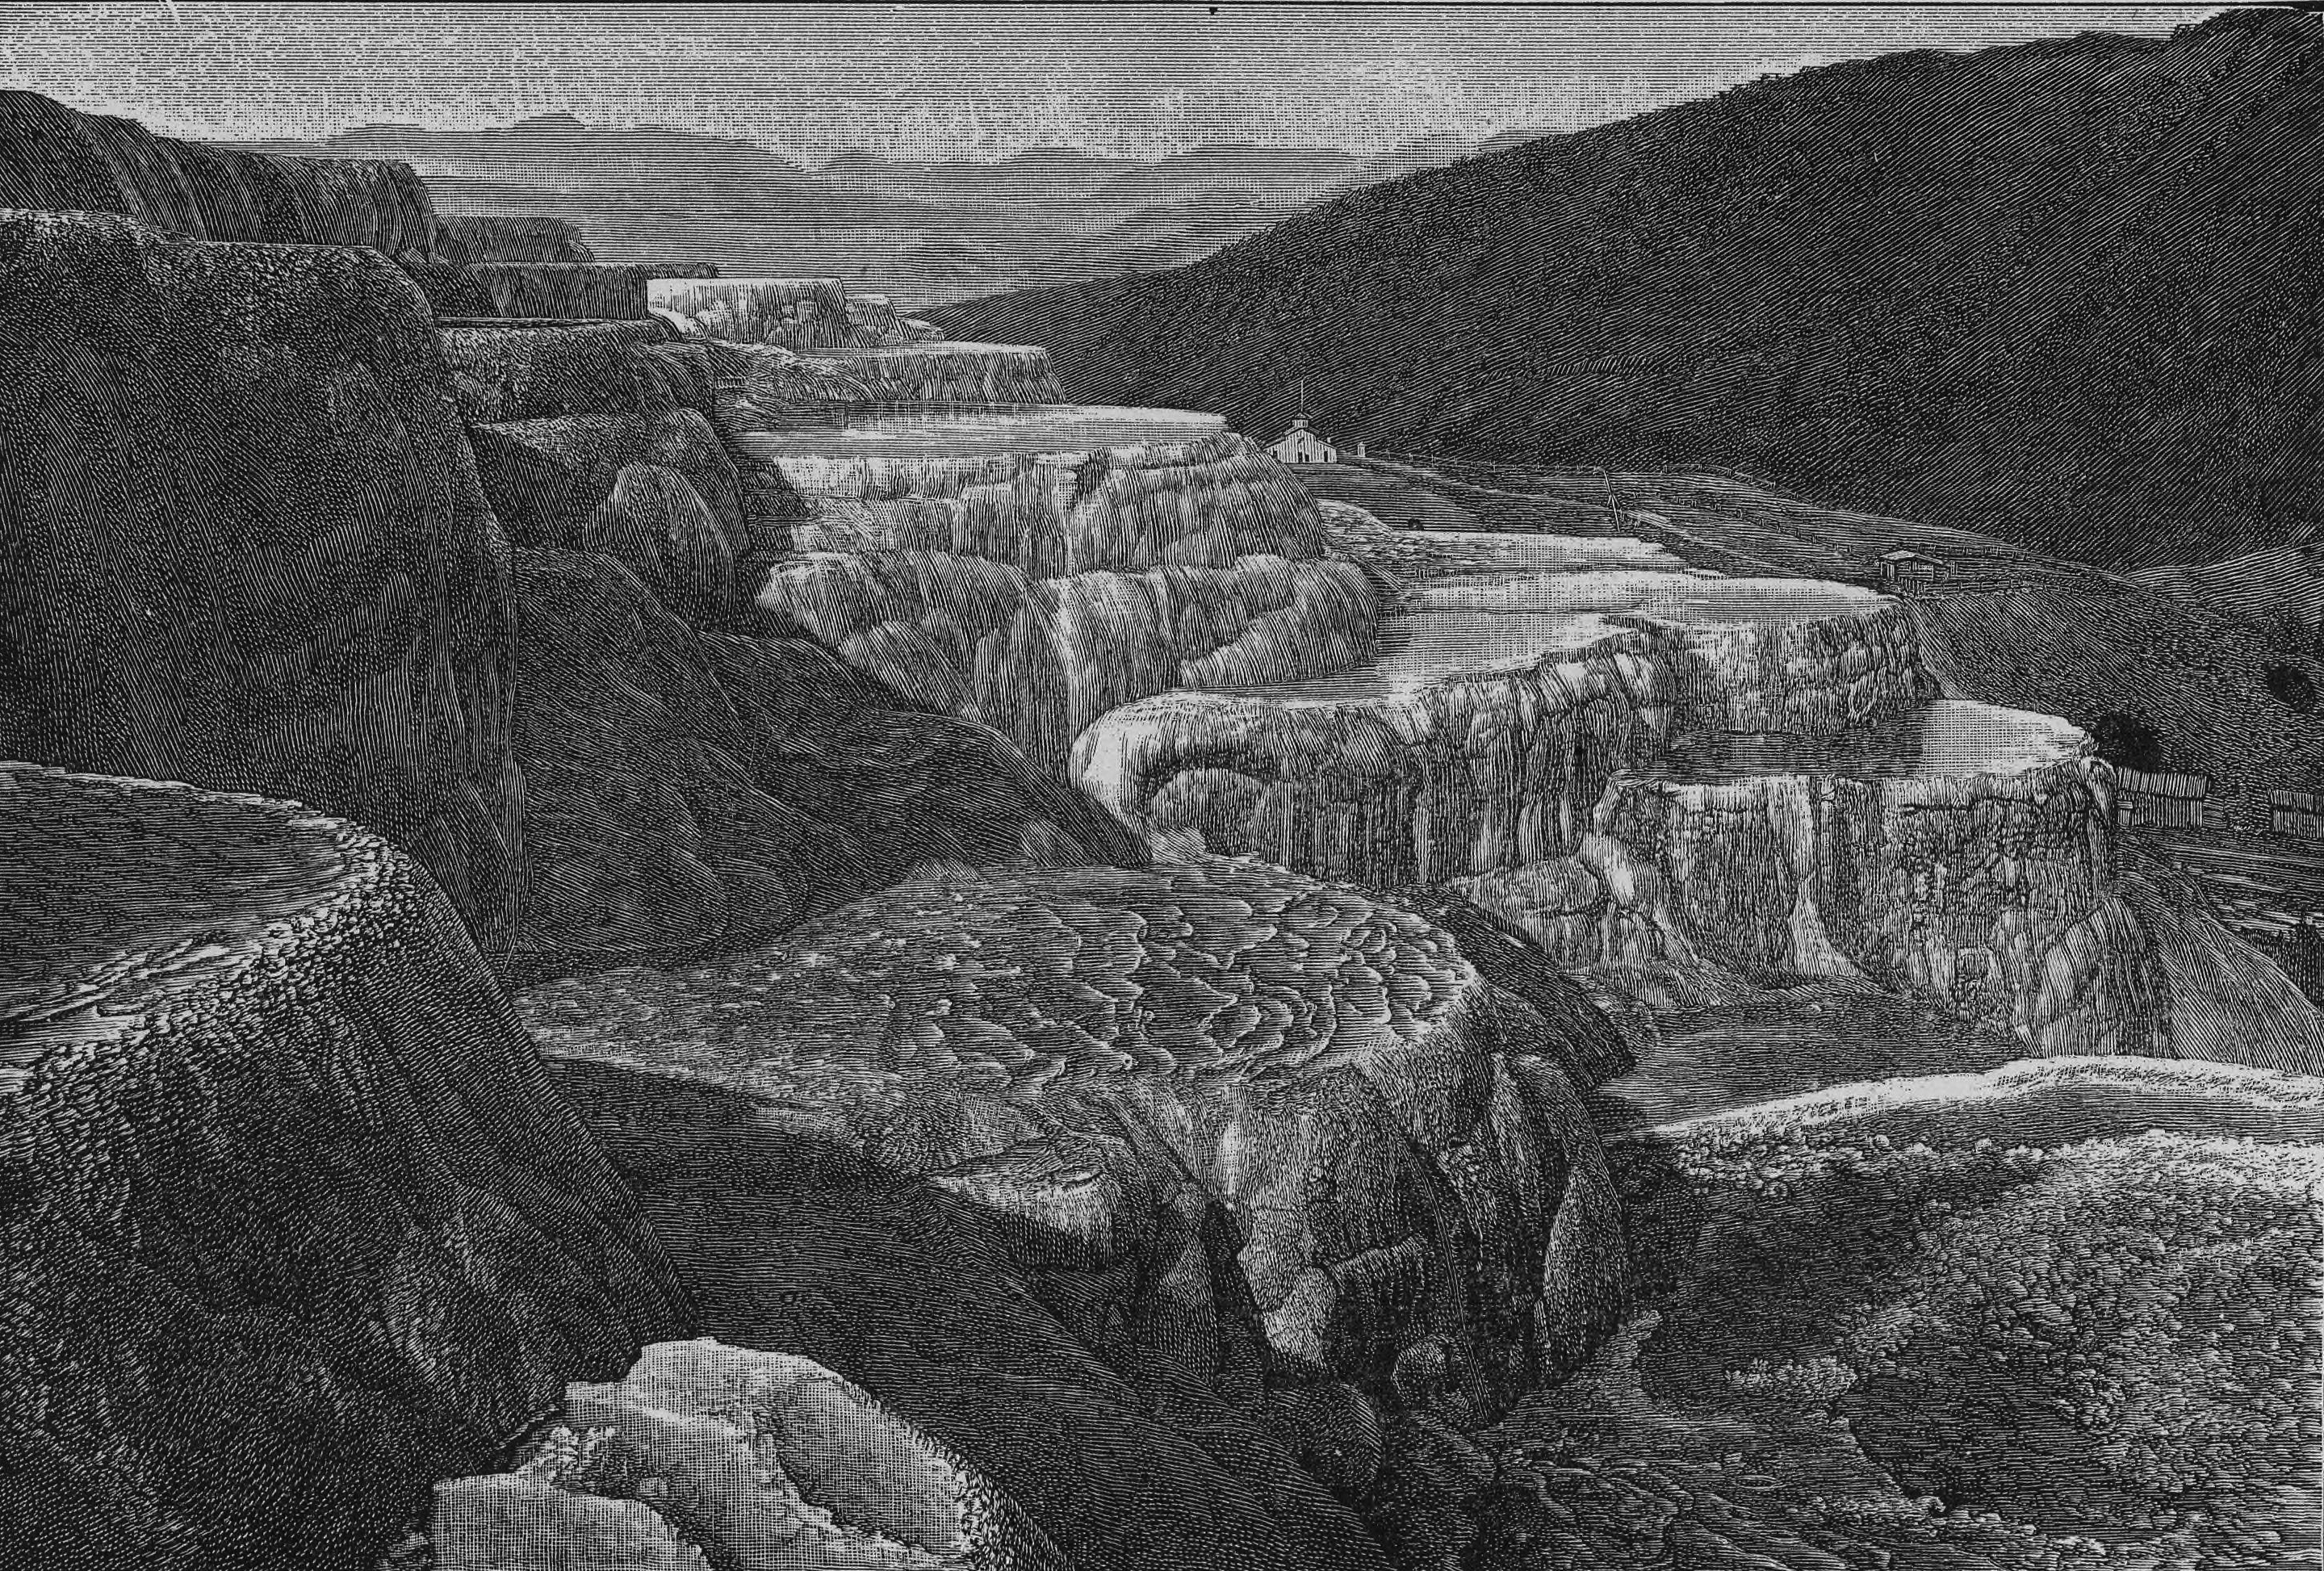 Une image contenant roche, vallée, montagne, extérieur

Description générée automatiquement